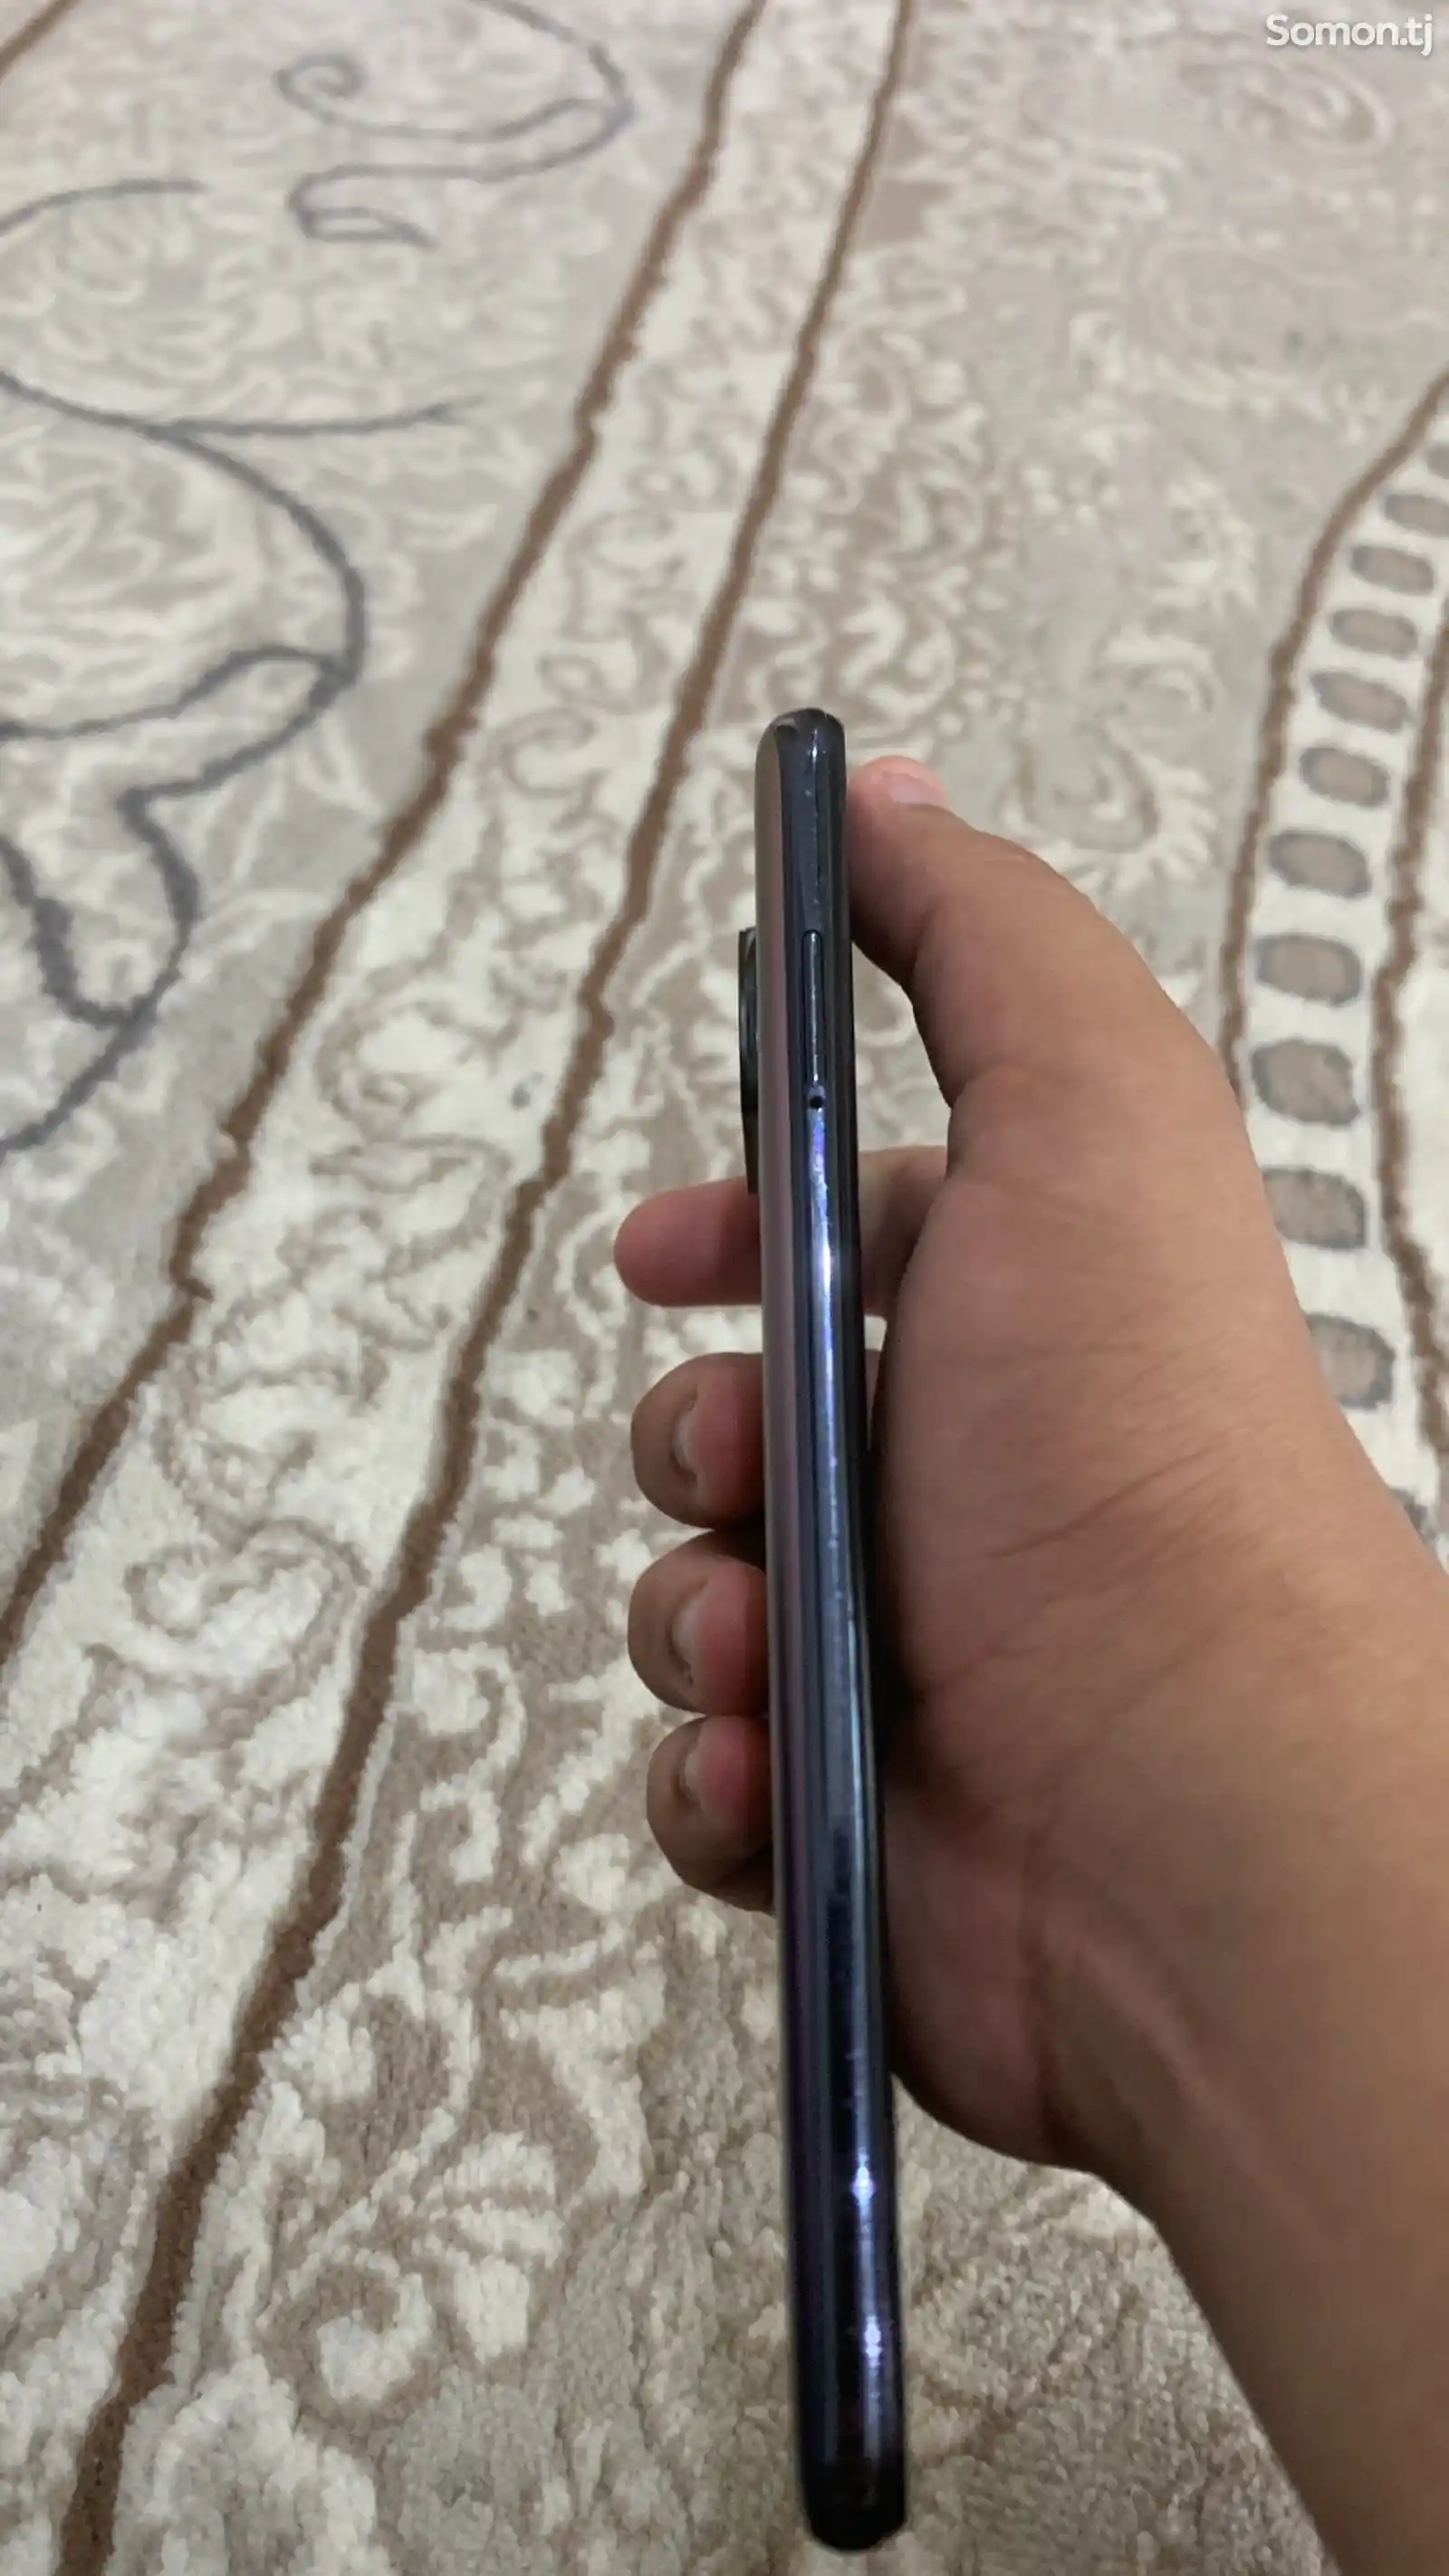 Xiaomi Poco X3 Pro-3